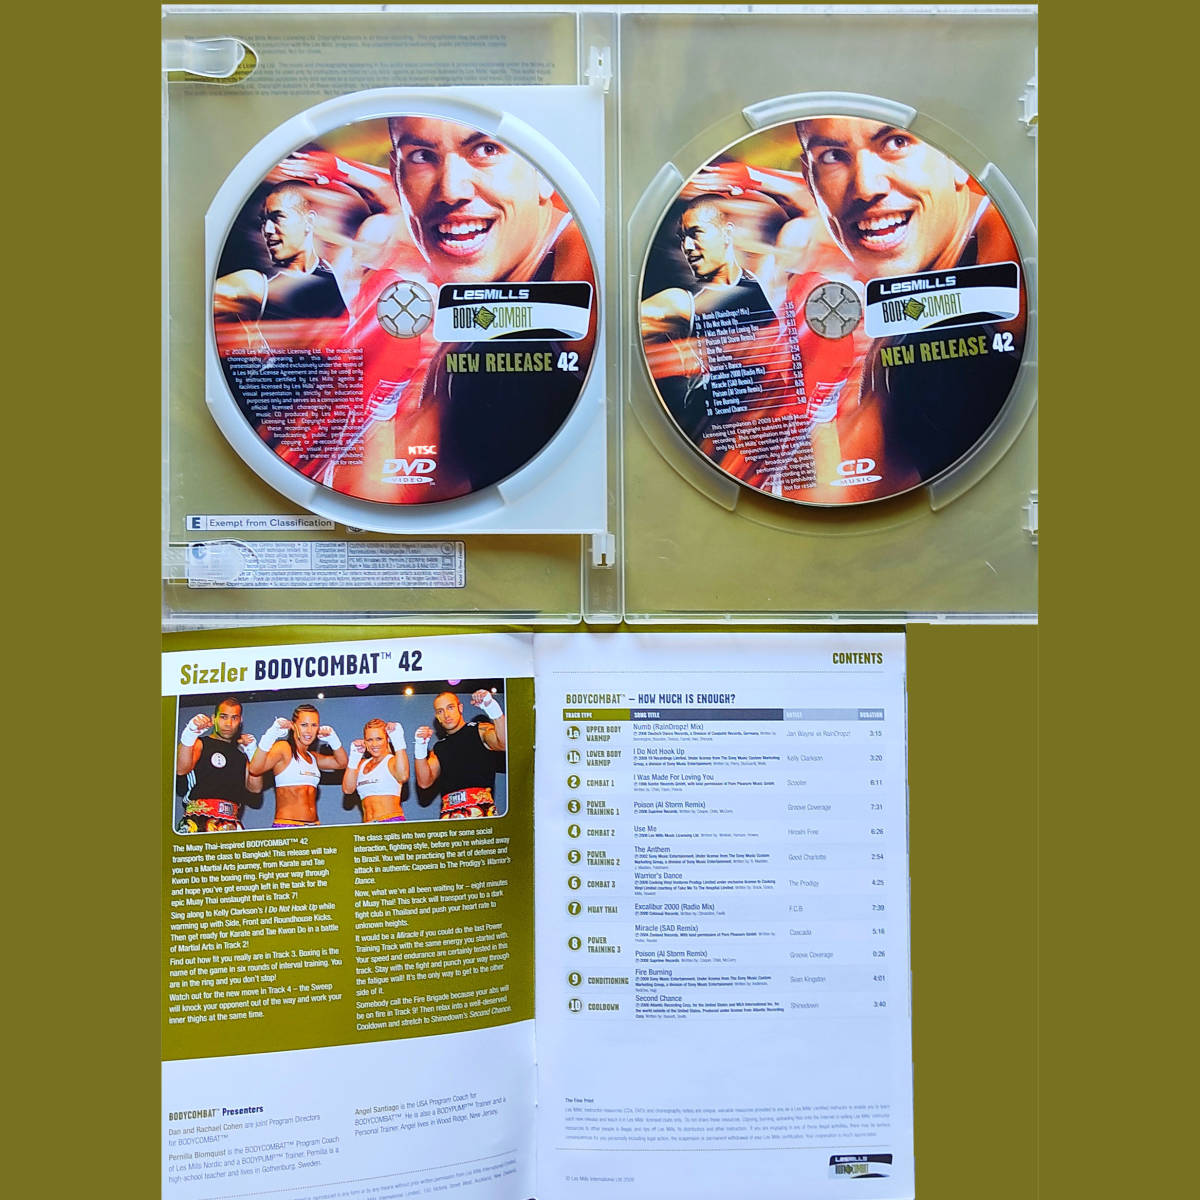 ボディコンバット 42 CD DVD LESMILLS BODYCOMBAT レスミルズ LESMILLS